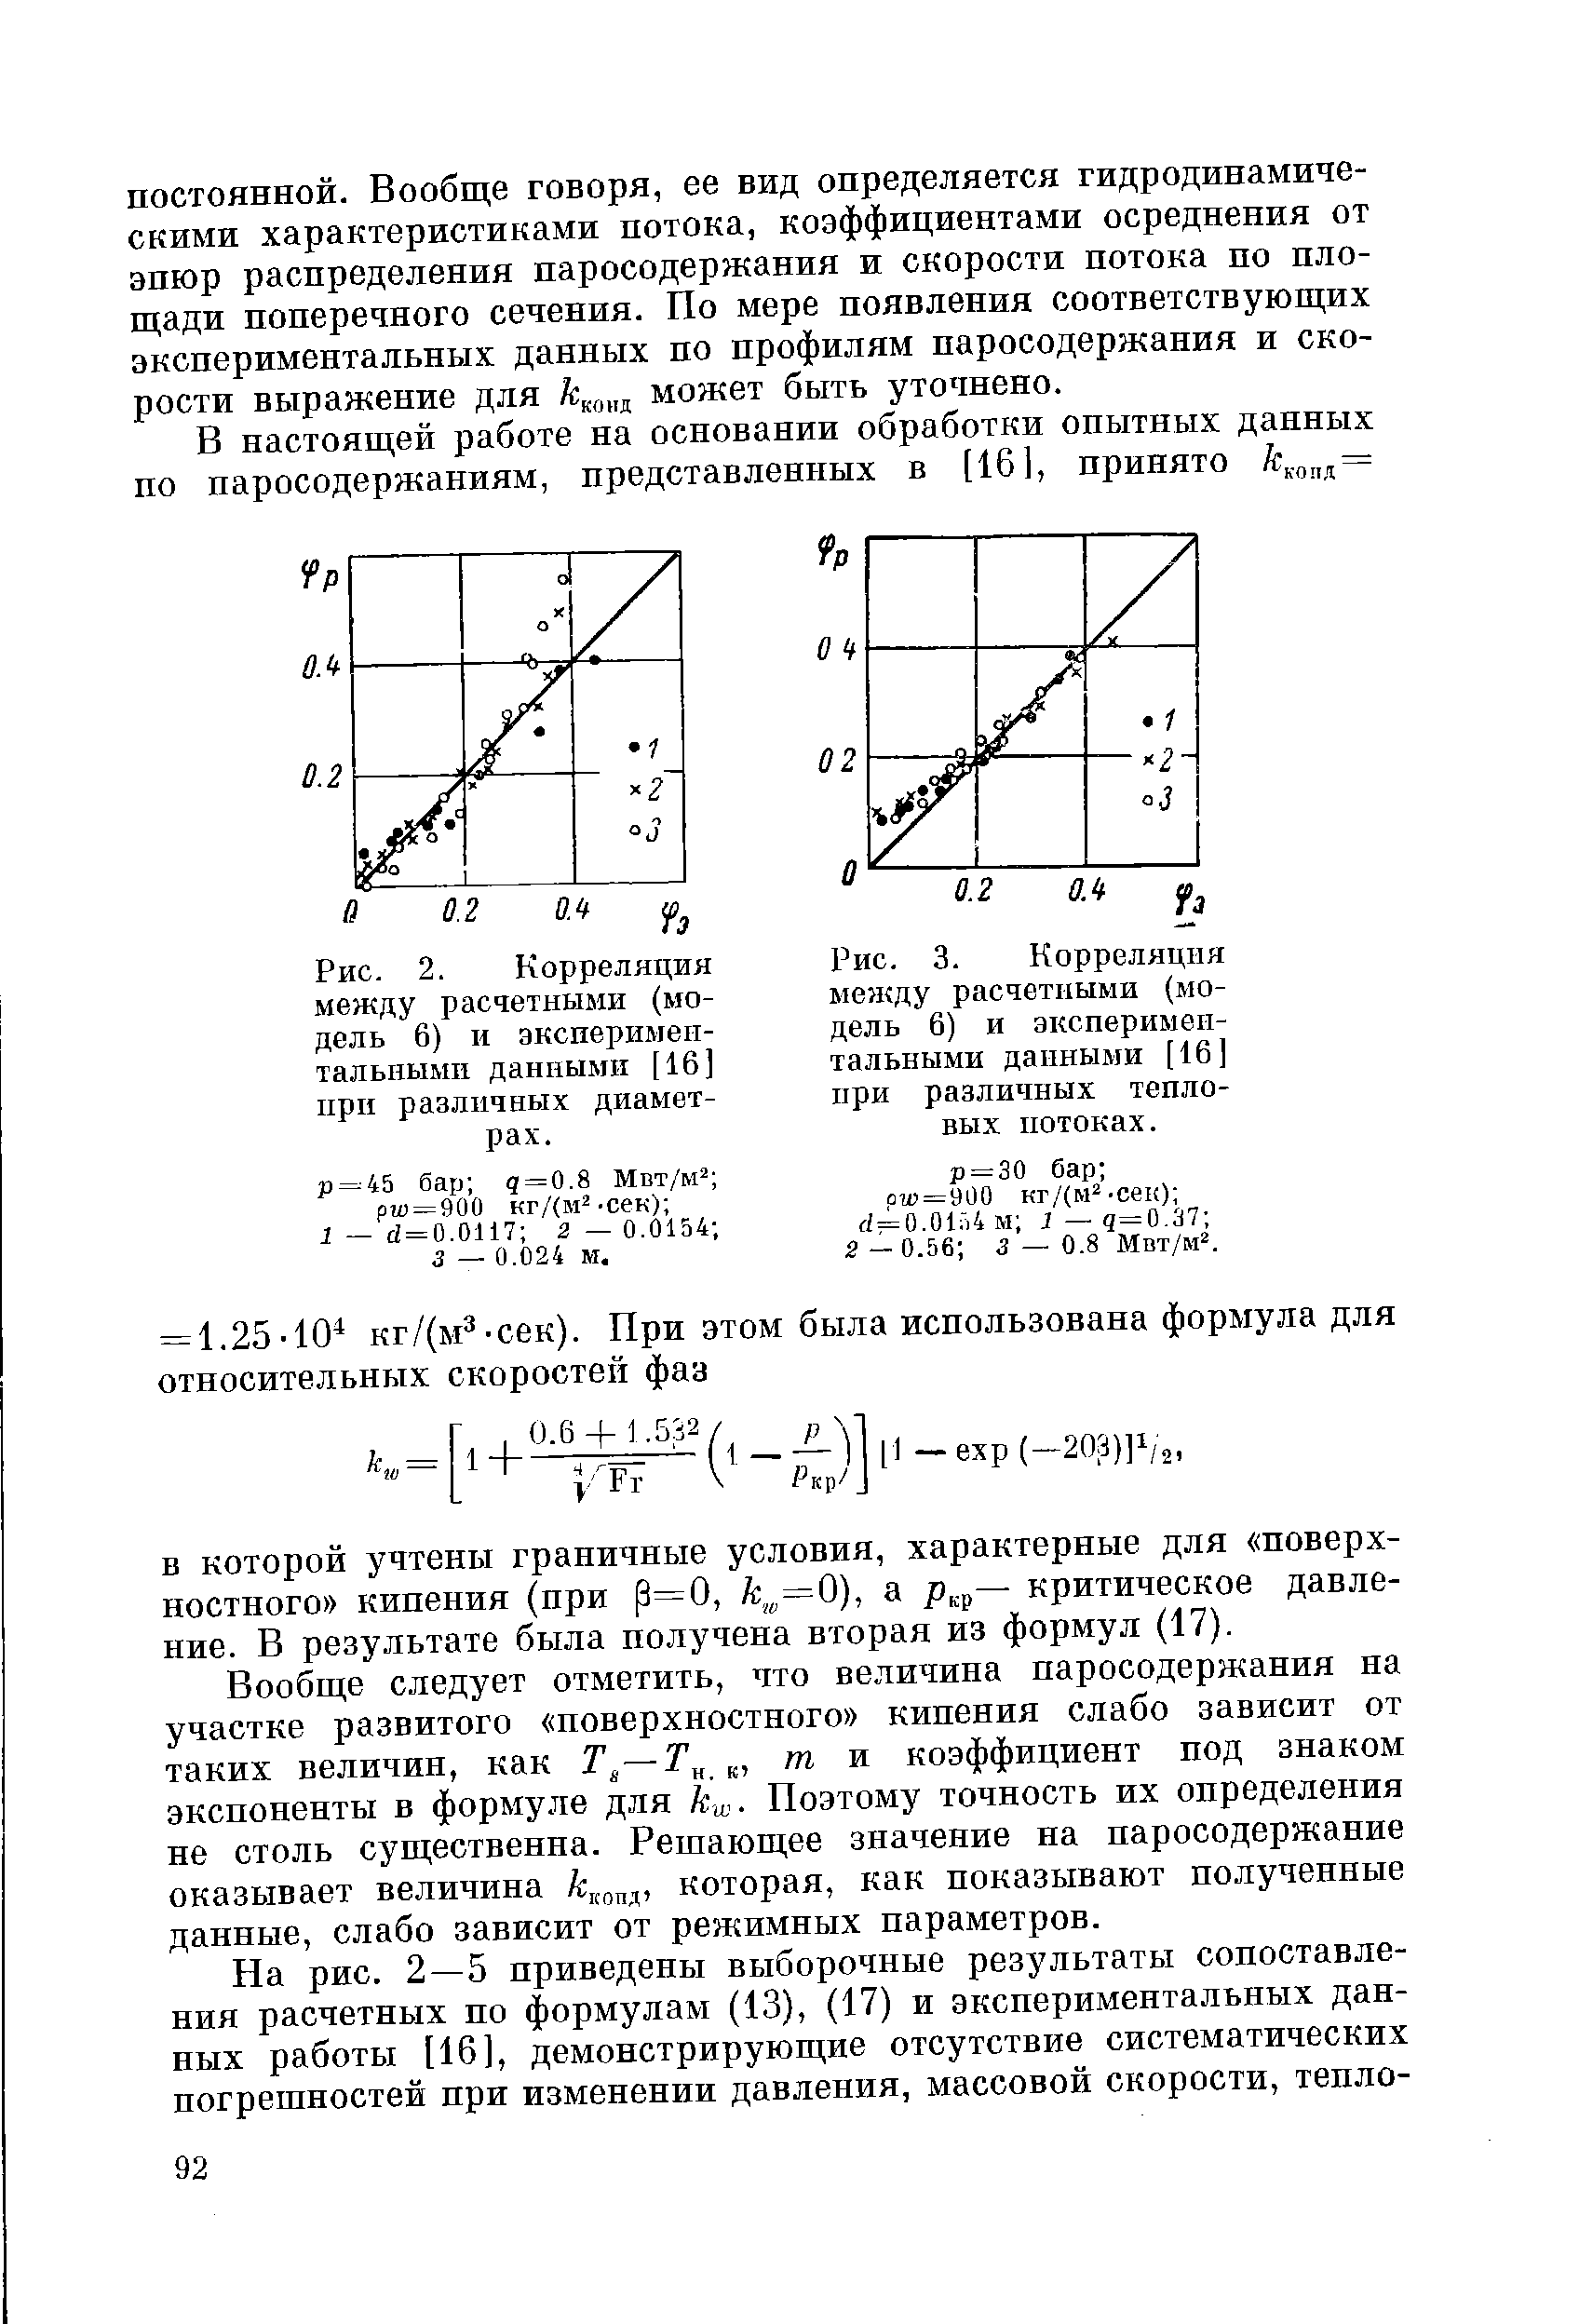 Рис. 3. Корреляция между расчетными (модель 6) и экспериментальными данными [16] при различных тепловых потоках.
